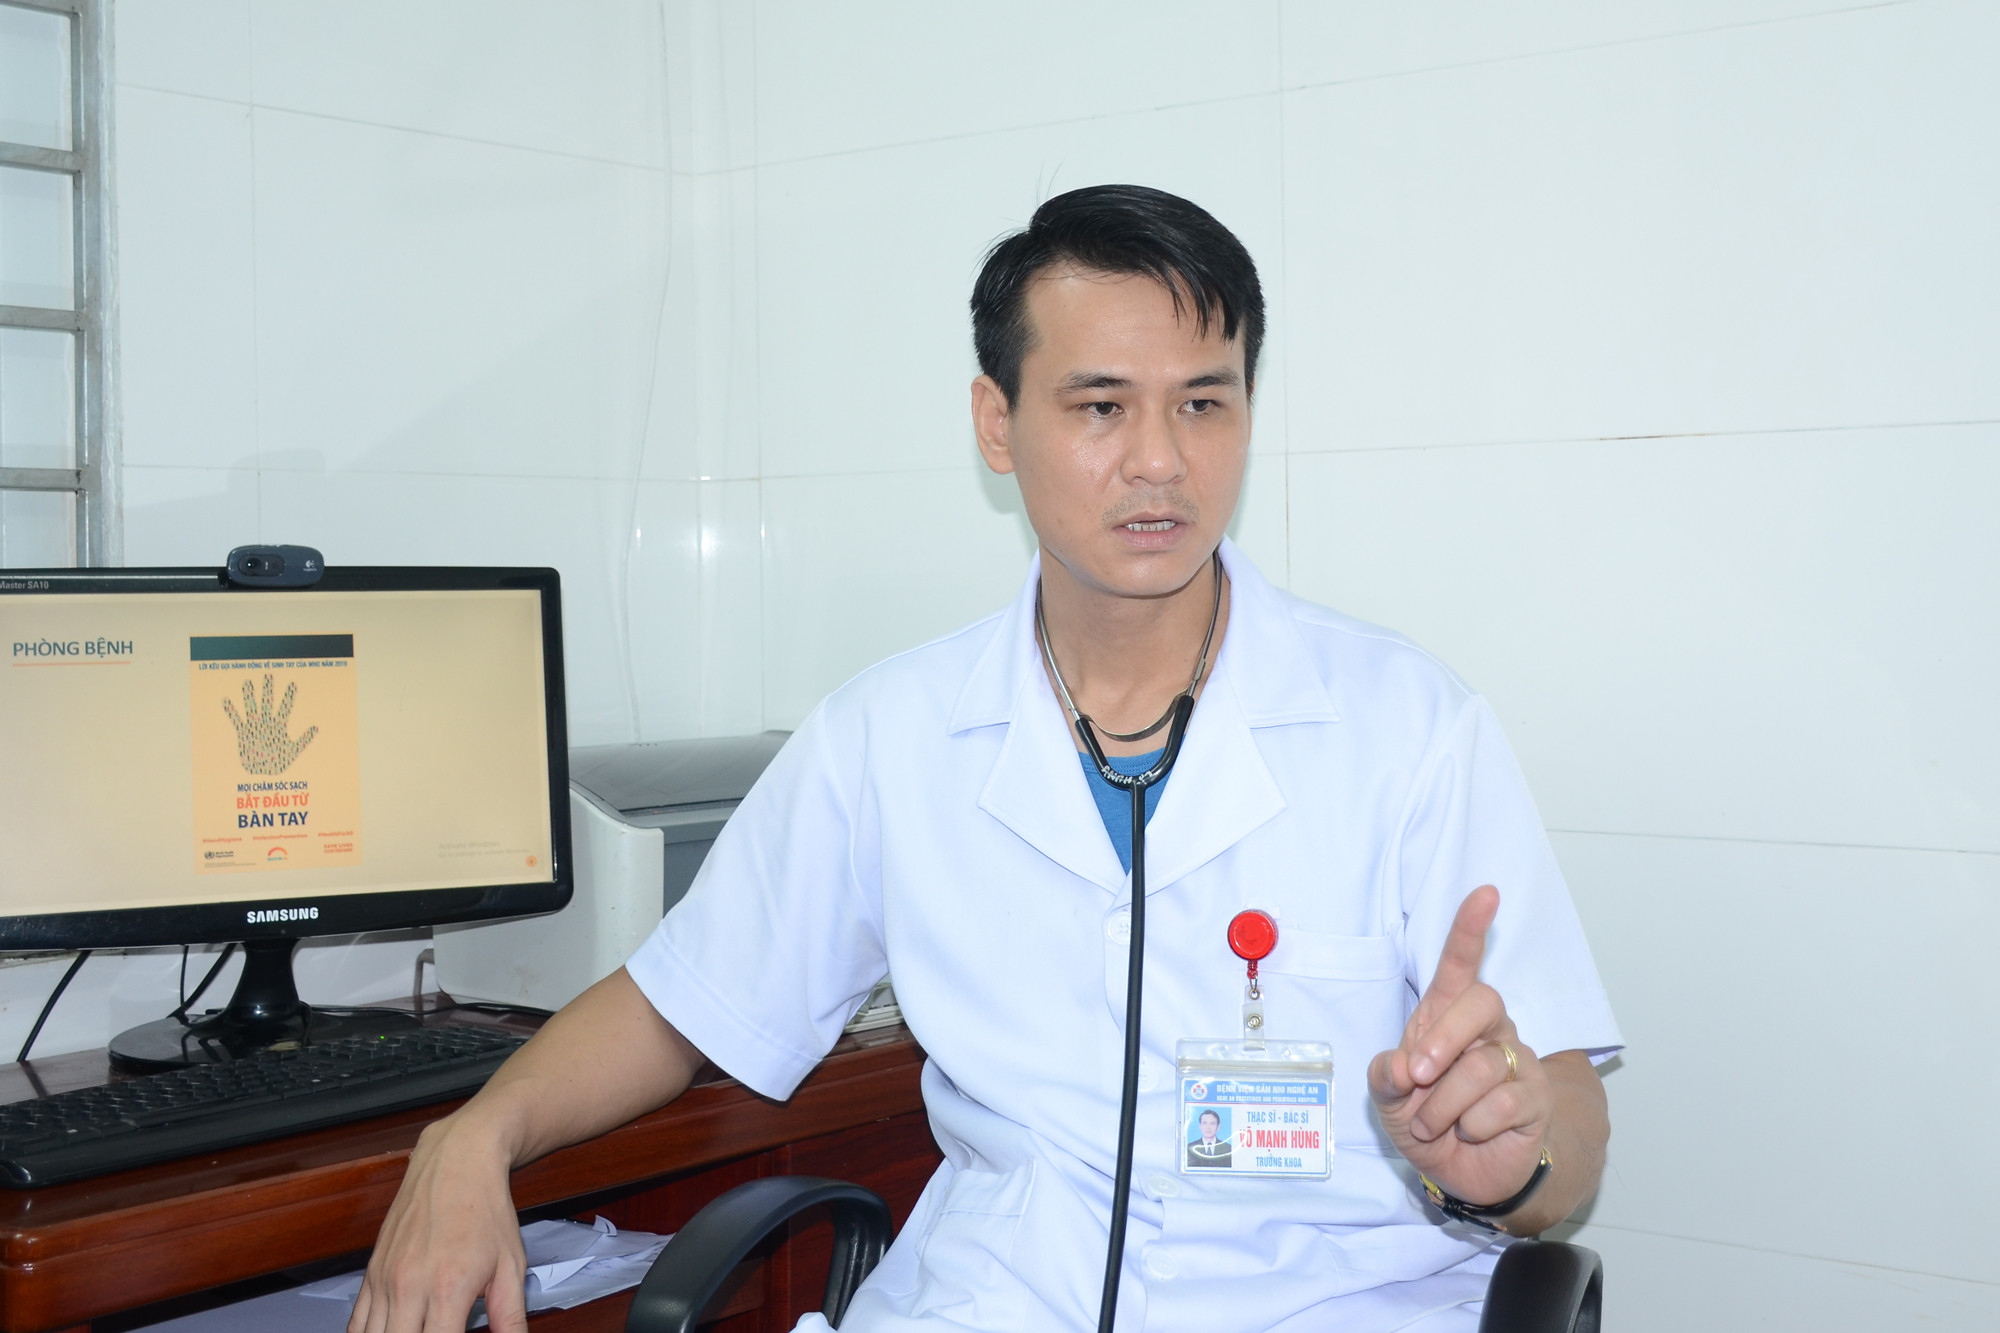 Thạc sĩ, bác sĩ Võ Mạnh Hùng khuyến cáo mọi người thực hiện tốt vệ sinh cá nhân để phòng bệnh. Ảnh: Thành Chung